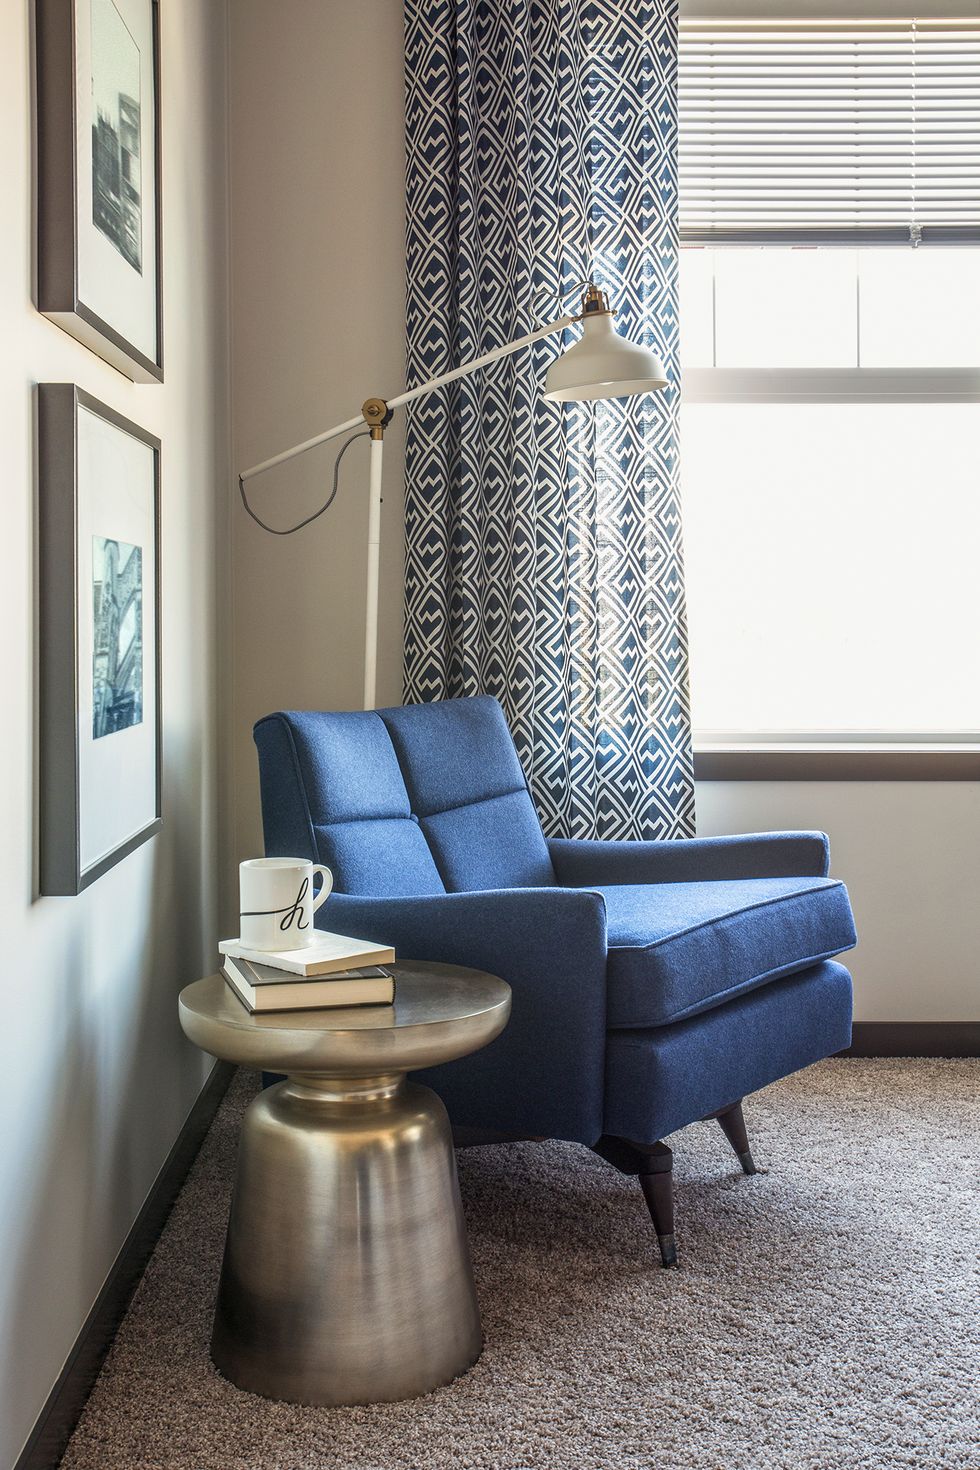 Copia le idee per arredare con stile e eleganza un soggiorno moderno con piccoli accorgimenti di design: a volte basta davvero poco per trasformare radicalmente la propria abitazione